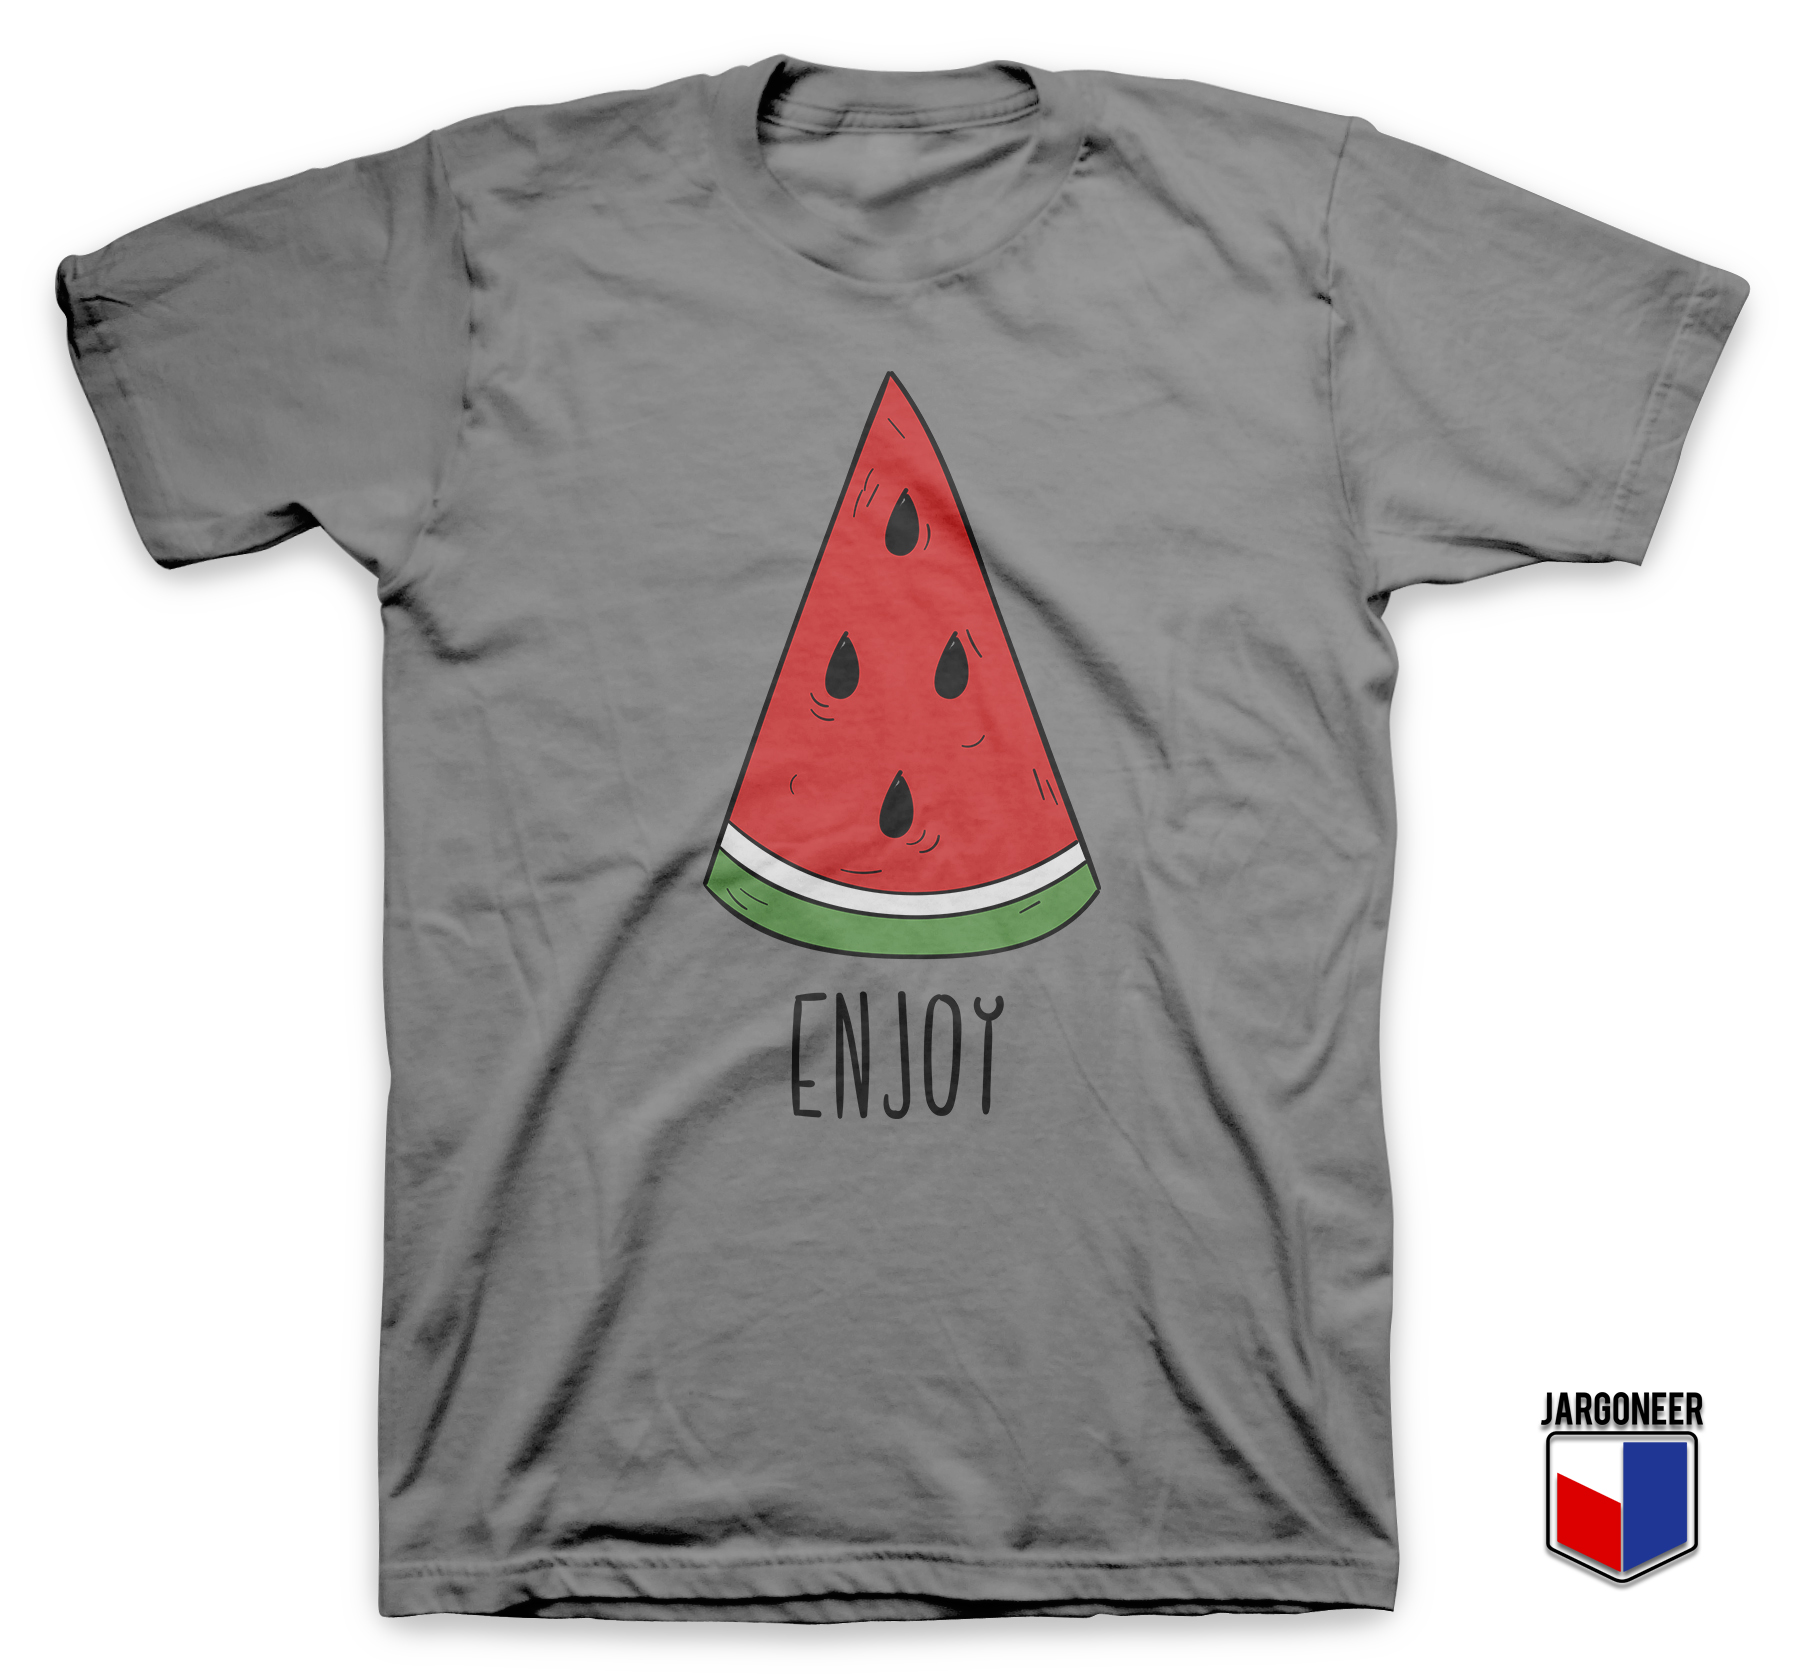 Enjoy Watermelon Gray T Shirt - Shop Unique Graphic Cool Shirt Designs